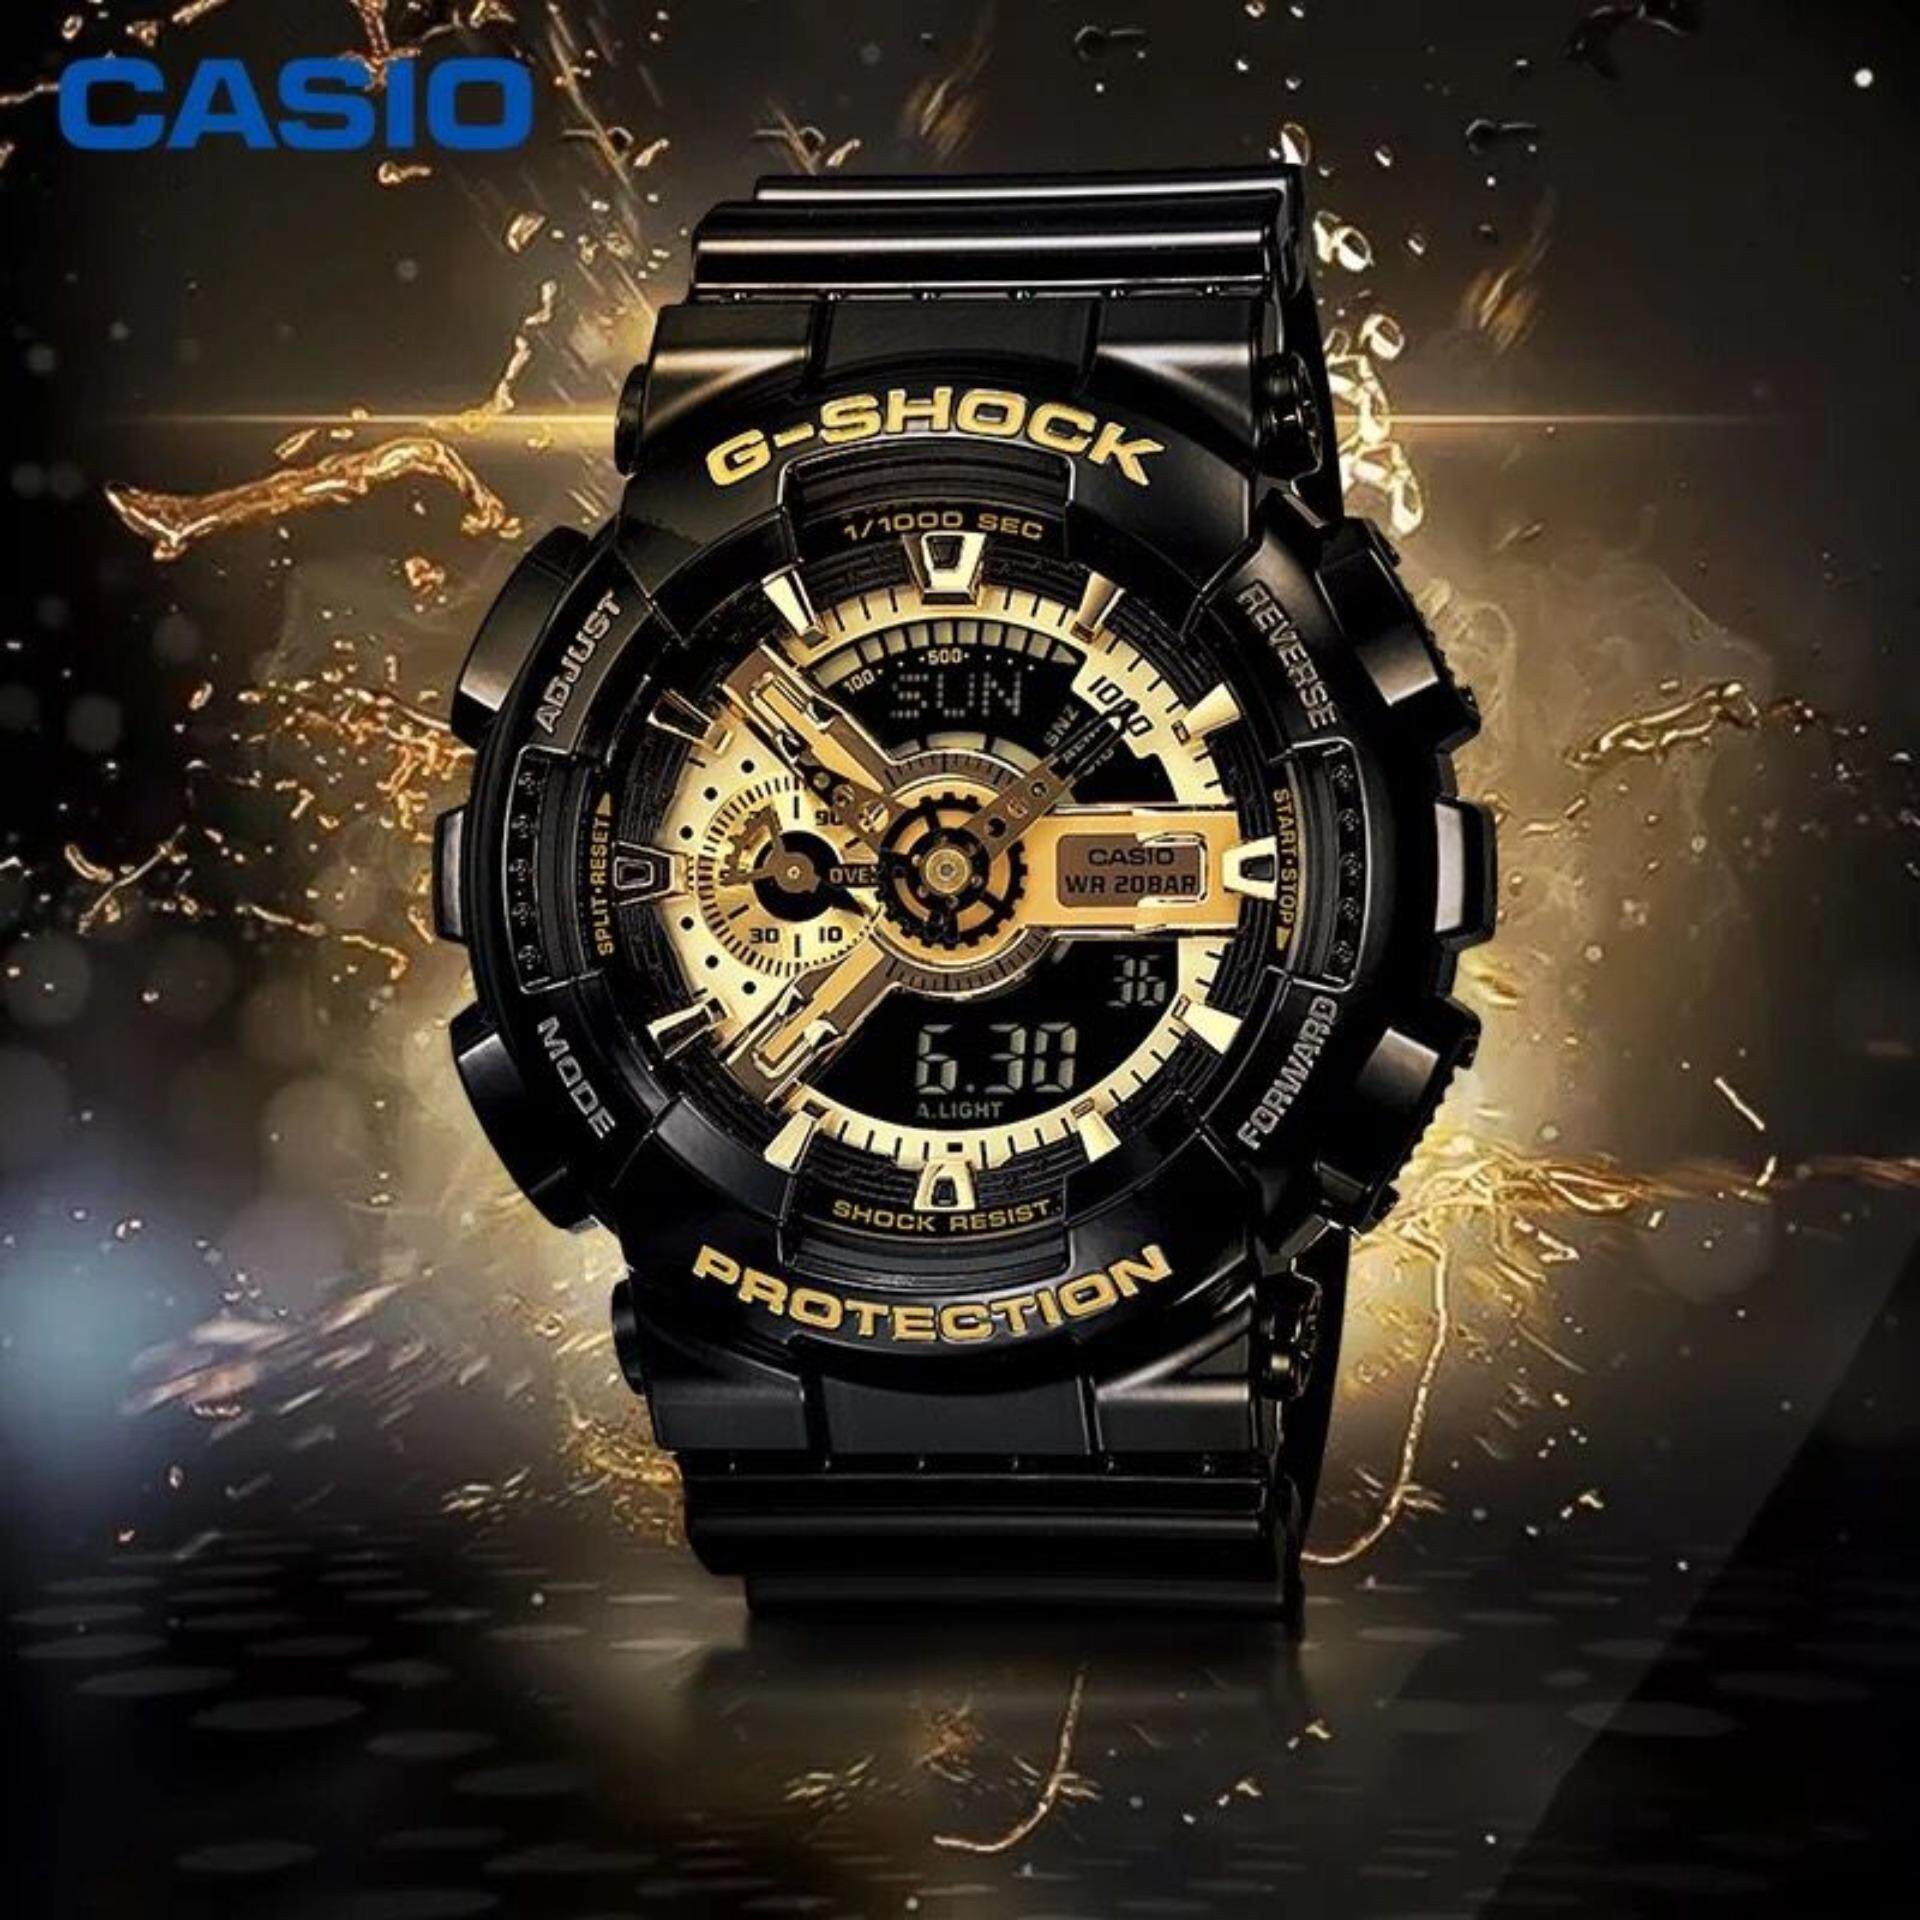 ภาพอธิบายเพิ่มเติมของ CASIO G-Shock นาฬิกาผู้ชาย GOLD SERIES รุ่น GA-110GB-1ADR (ประกัน)มีการรับประกันจากผู้ขาย(1 ปี)